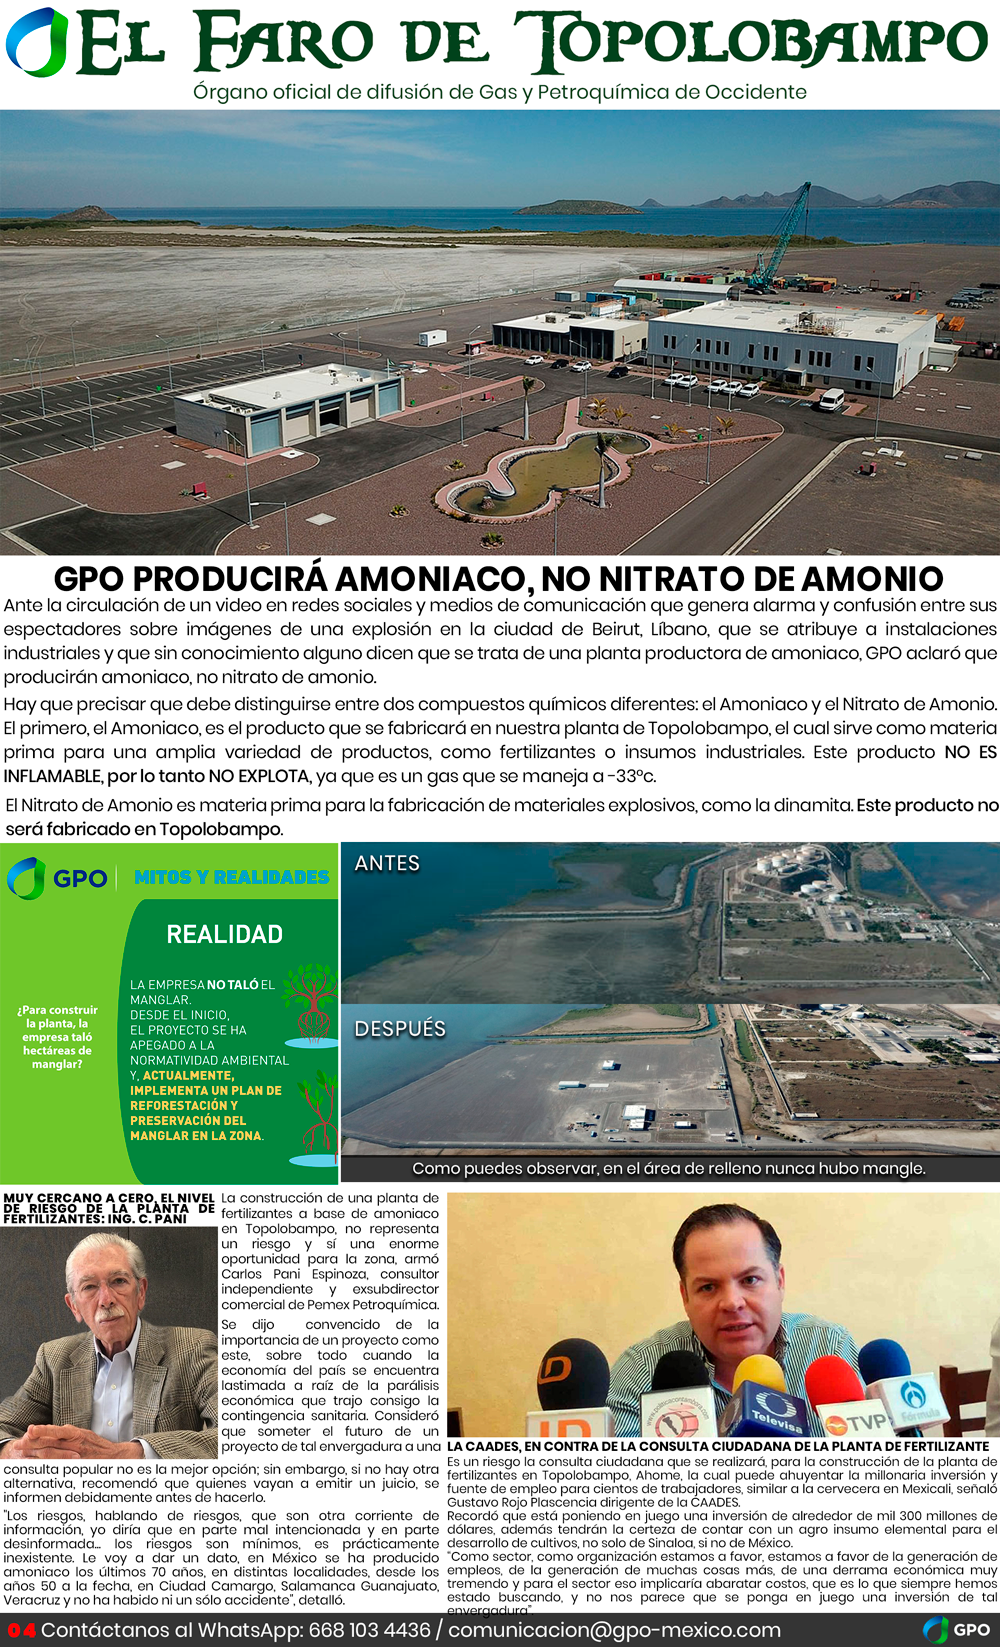 GPO - El Faro de Topolobampo - A - Español - Agosto 2020